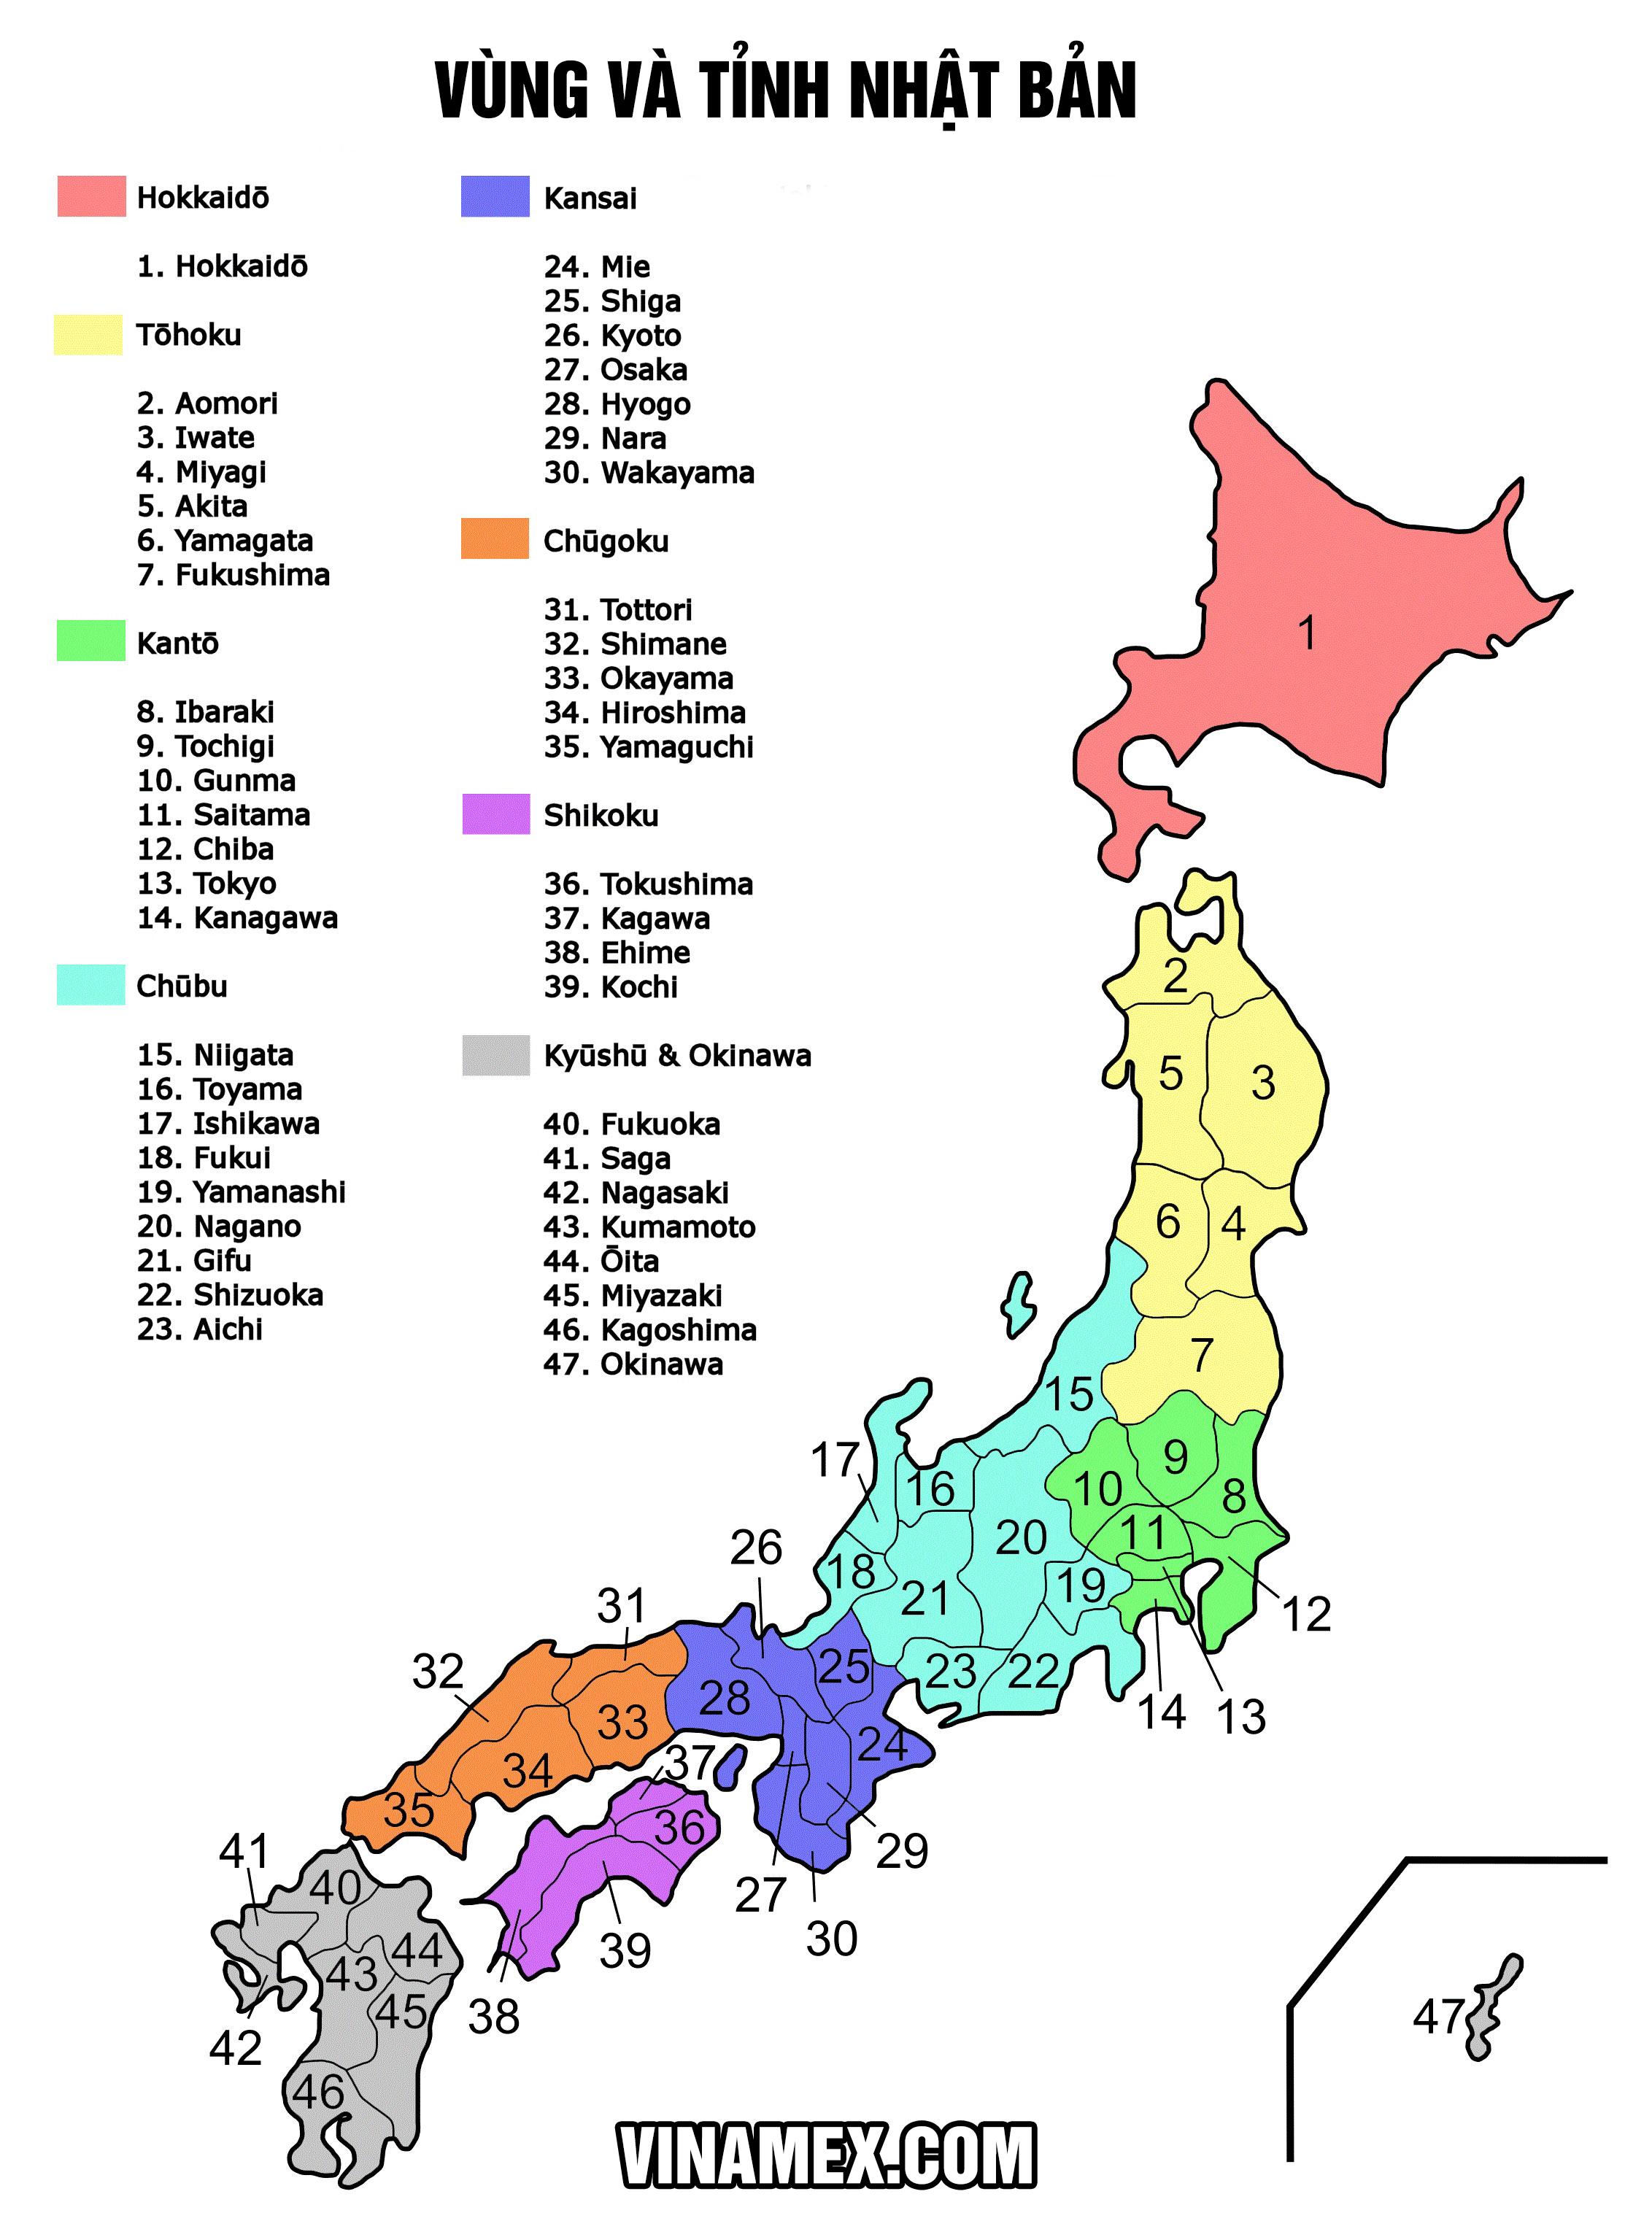 Nhật Bản có bao nhiêu tỉnh